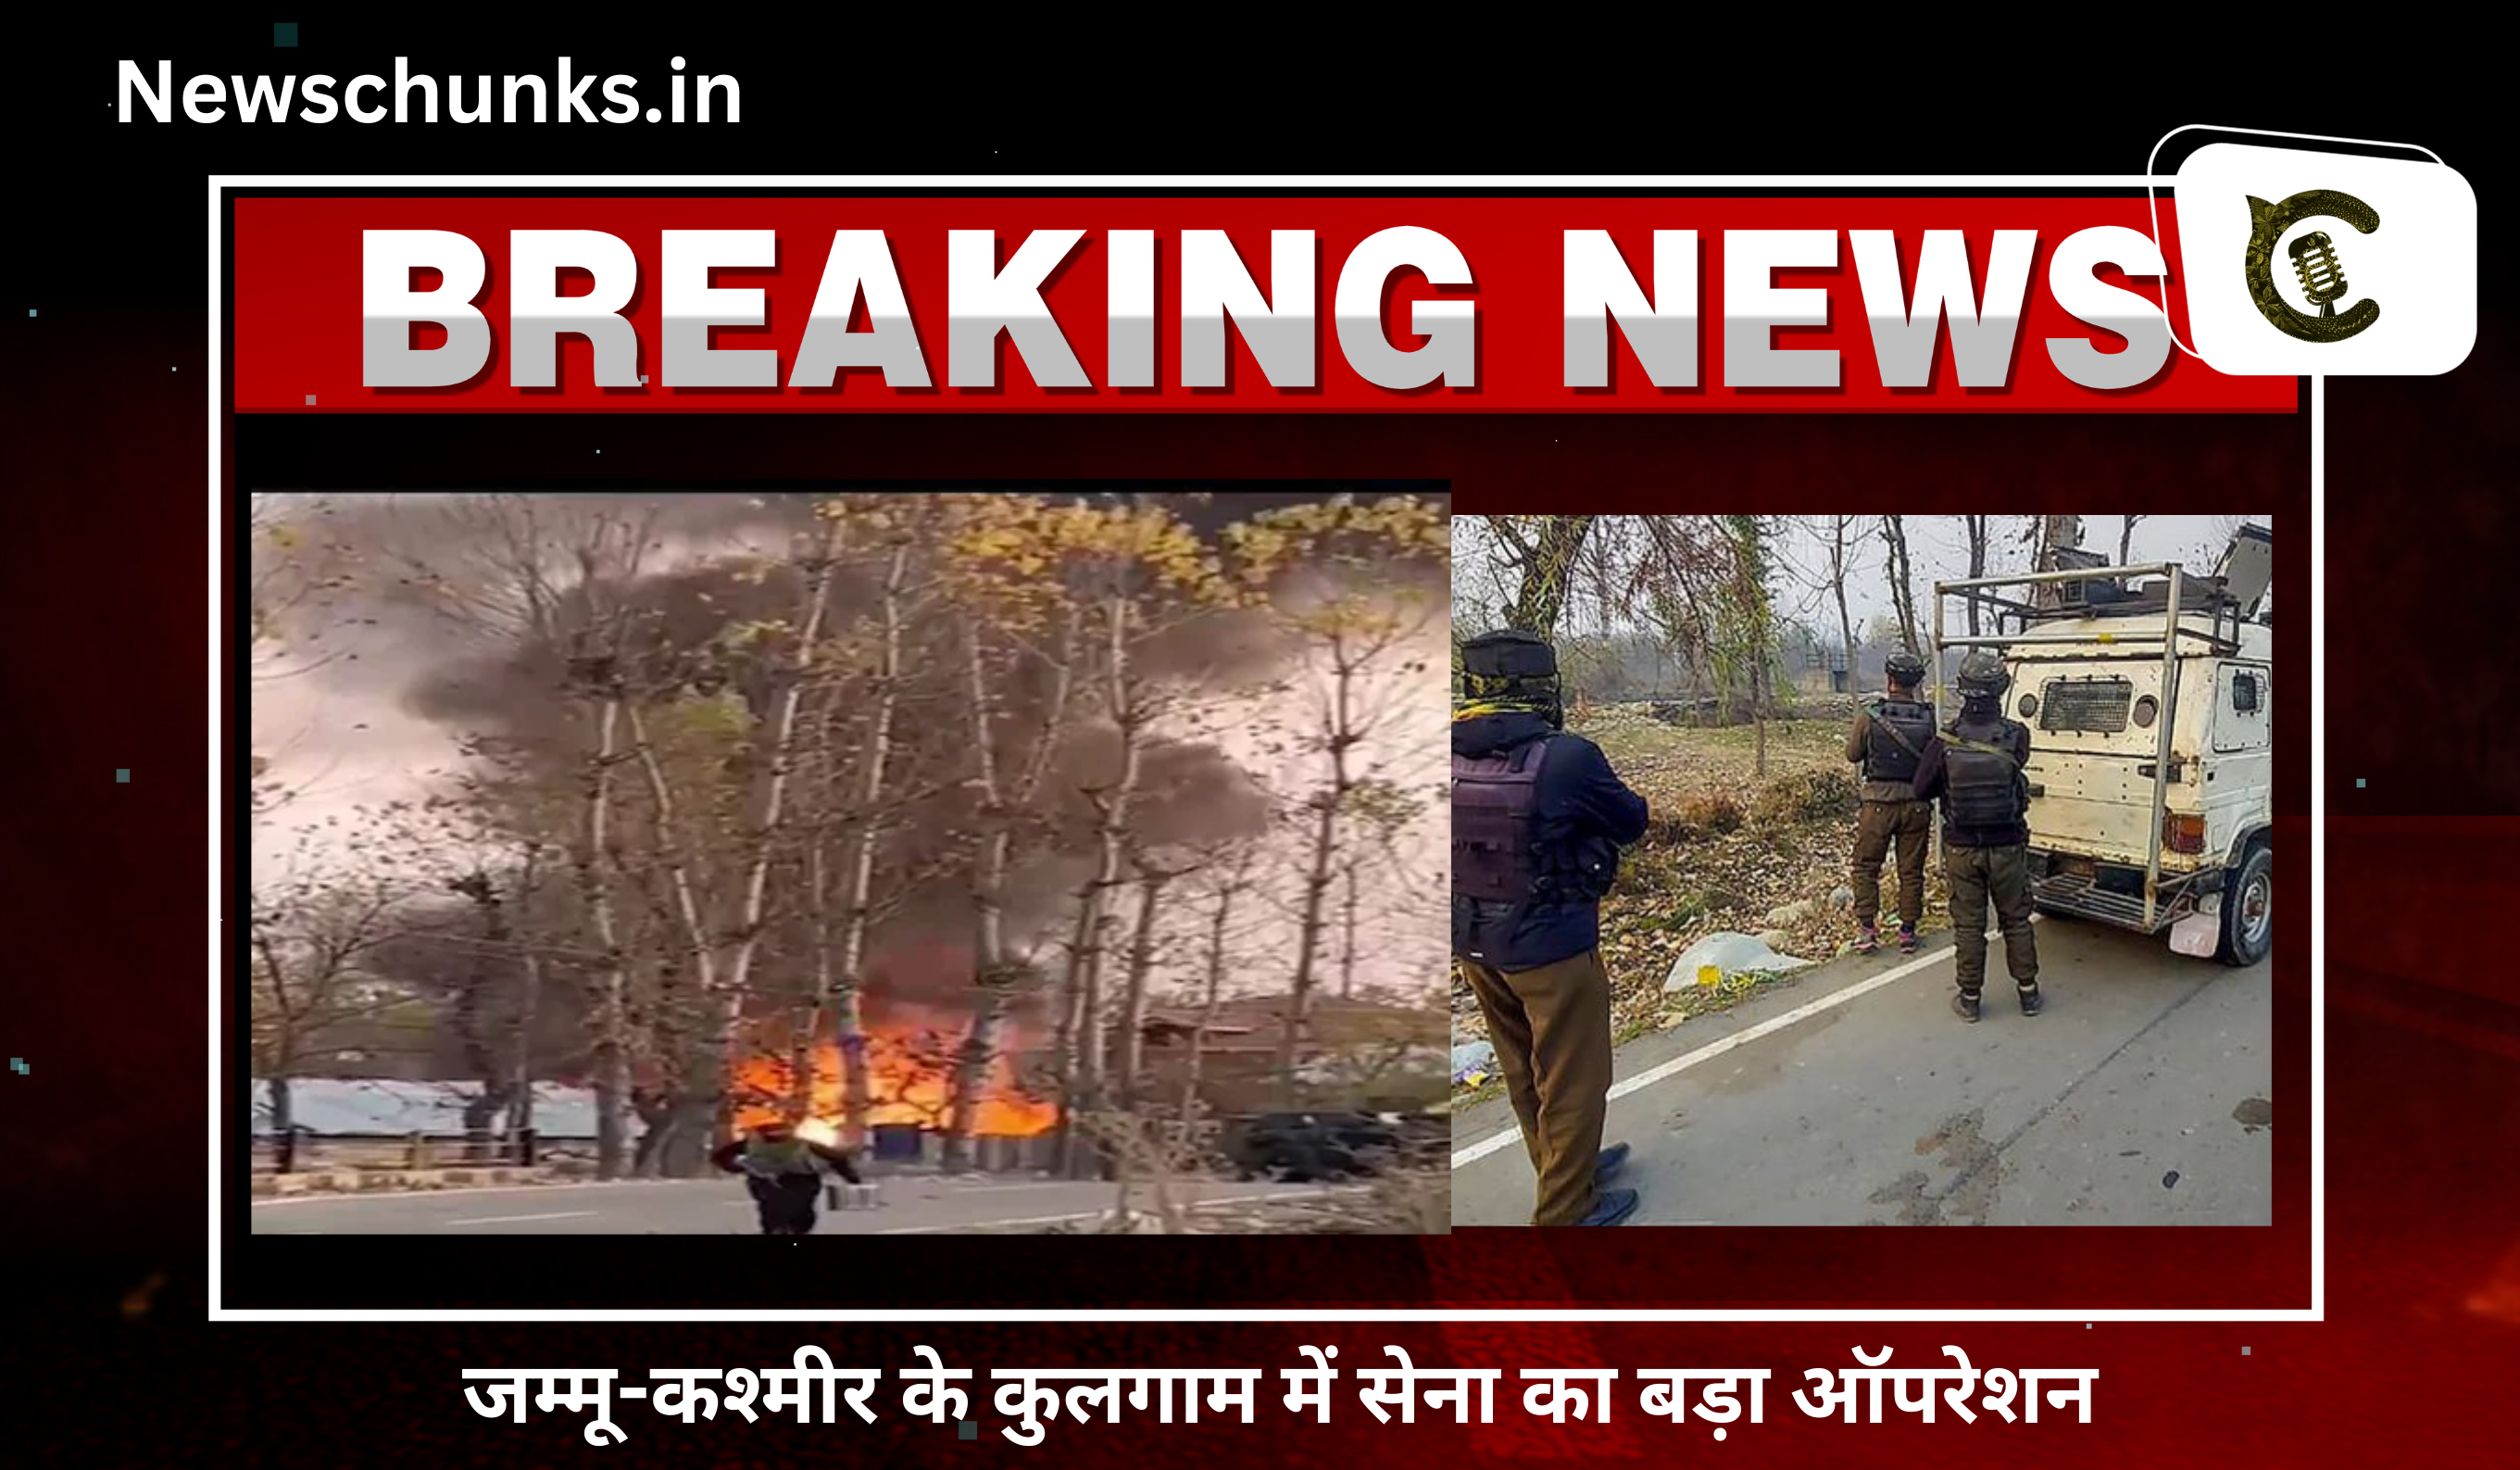 security force killed 5 terrorists in kulgam fired rocket launcher: जम्मू-कश्मीर के कुलगाम कुलगाम में सेना का बड़ा ऑपरेशन, जहाँ छिपे थे आतंकी, सेना ने रॉकेट लॉन्चर से उस घर को उड़ाया, 5 आतंकवादी ढेर